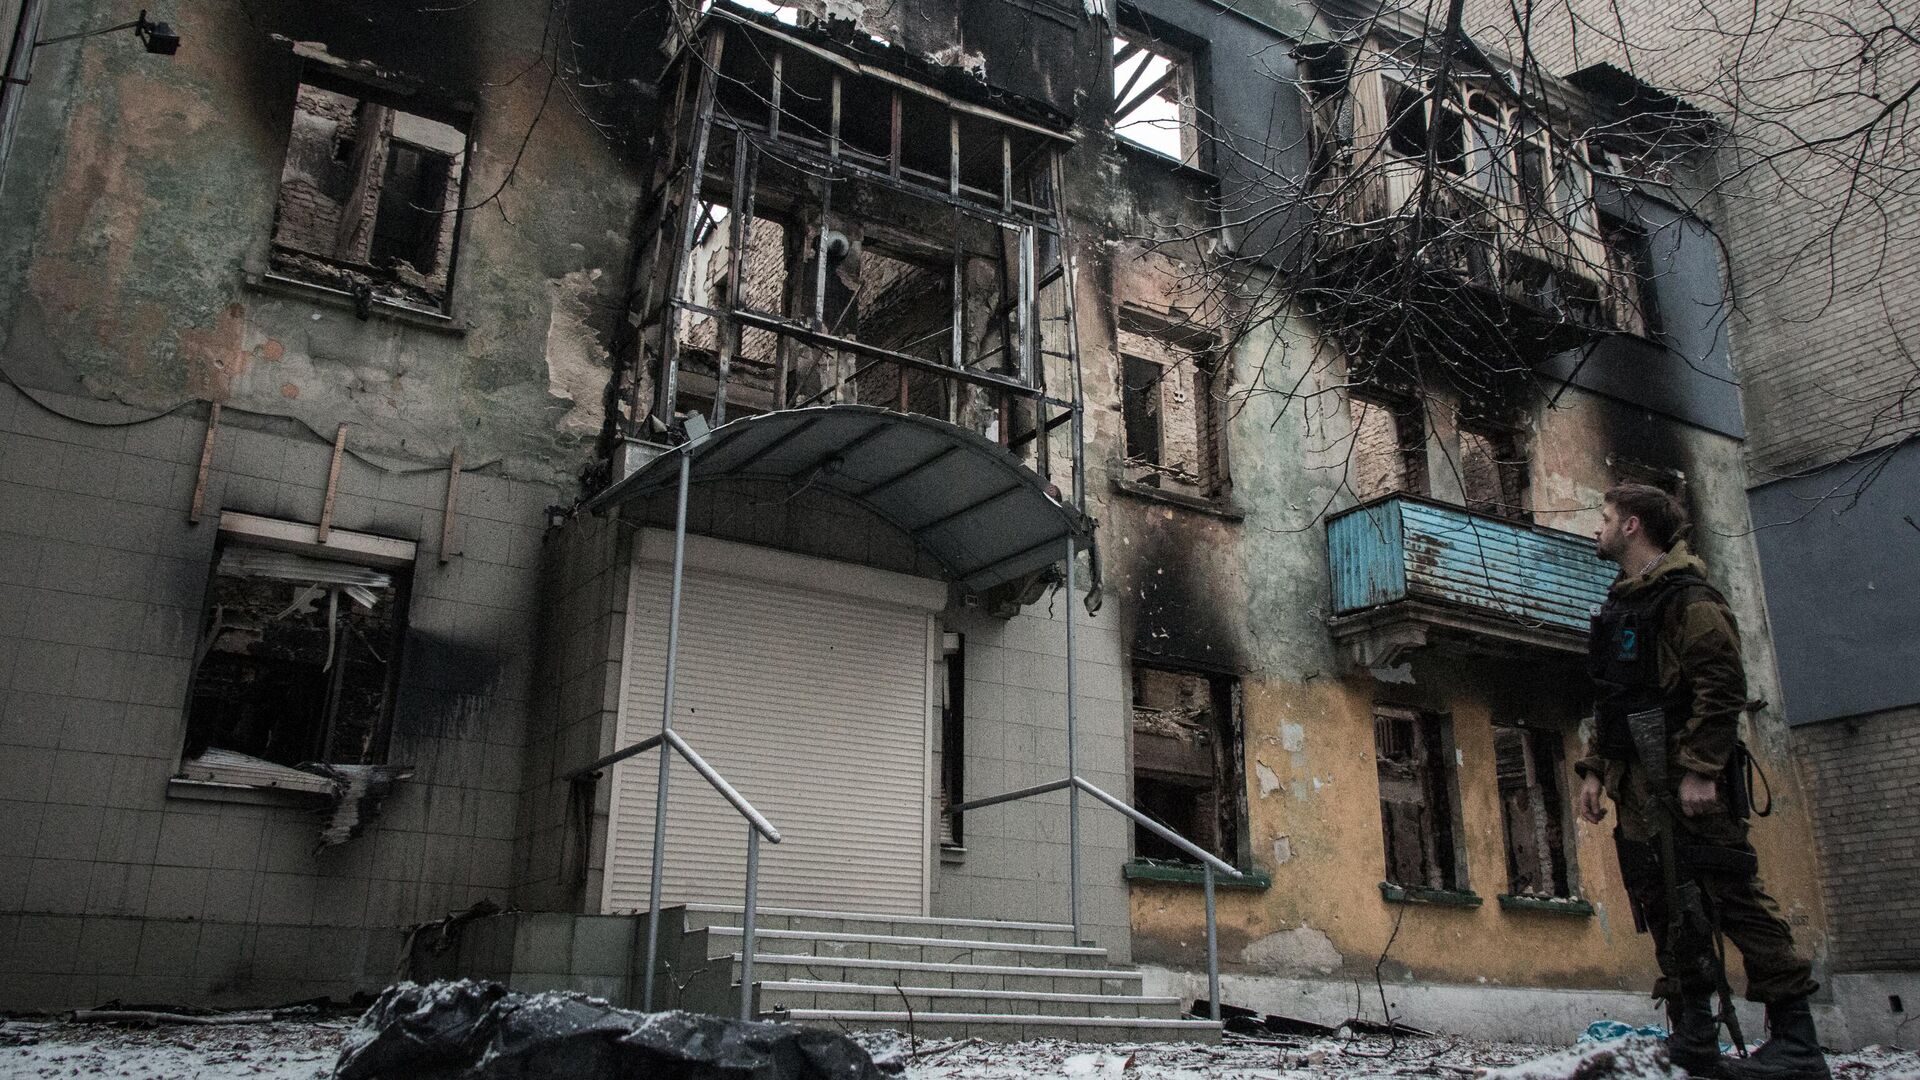 Многоквартирный жилой дом, разрушенный в результате обстрелов во время боевых действий в городе Дебальцево - РИА Новости, 1920, 30.04.2022